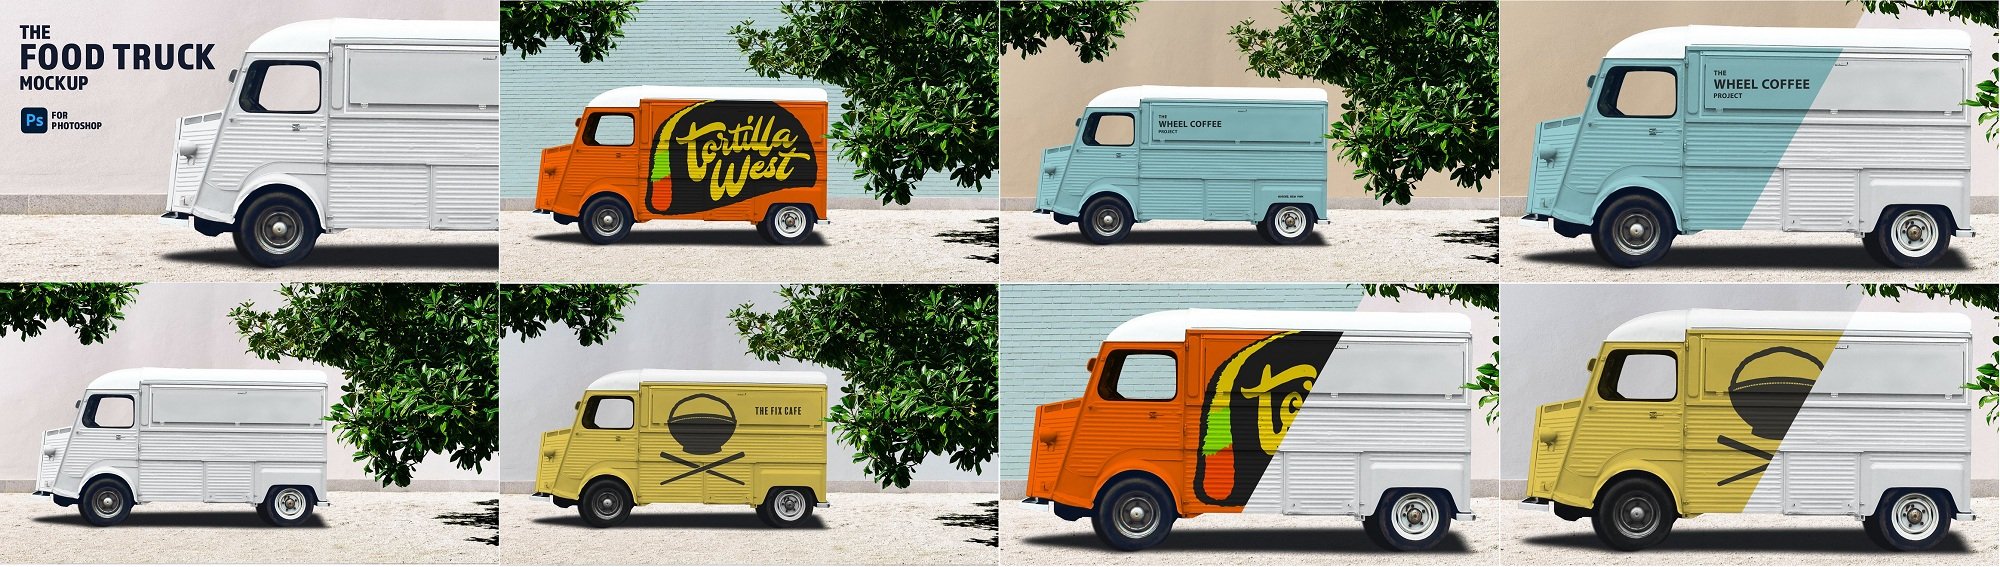 Download Download CreativeMarket - Food Truck Branding Mockup ...